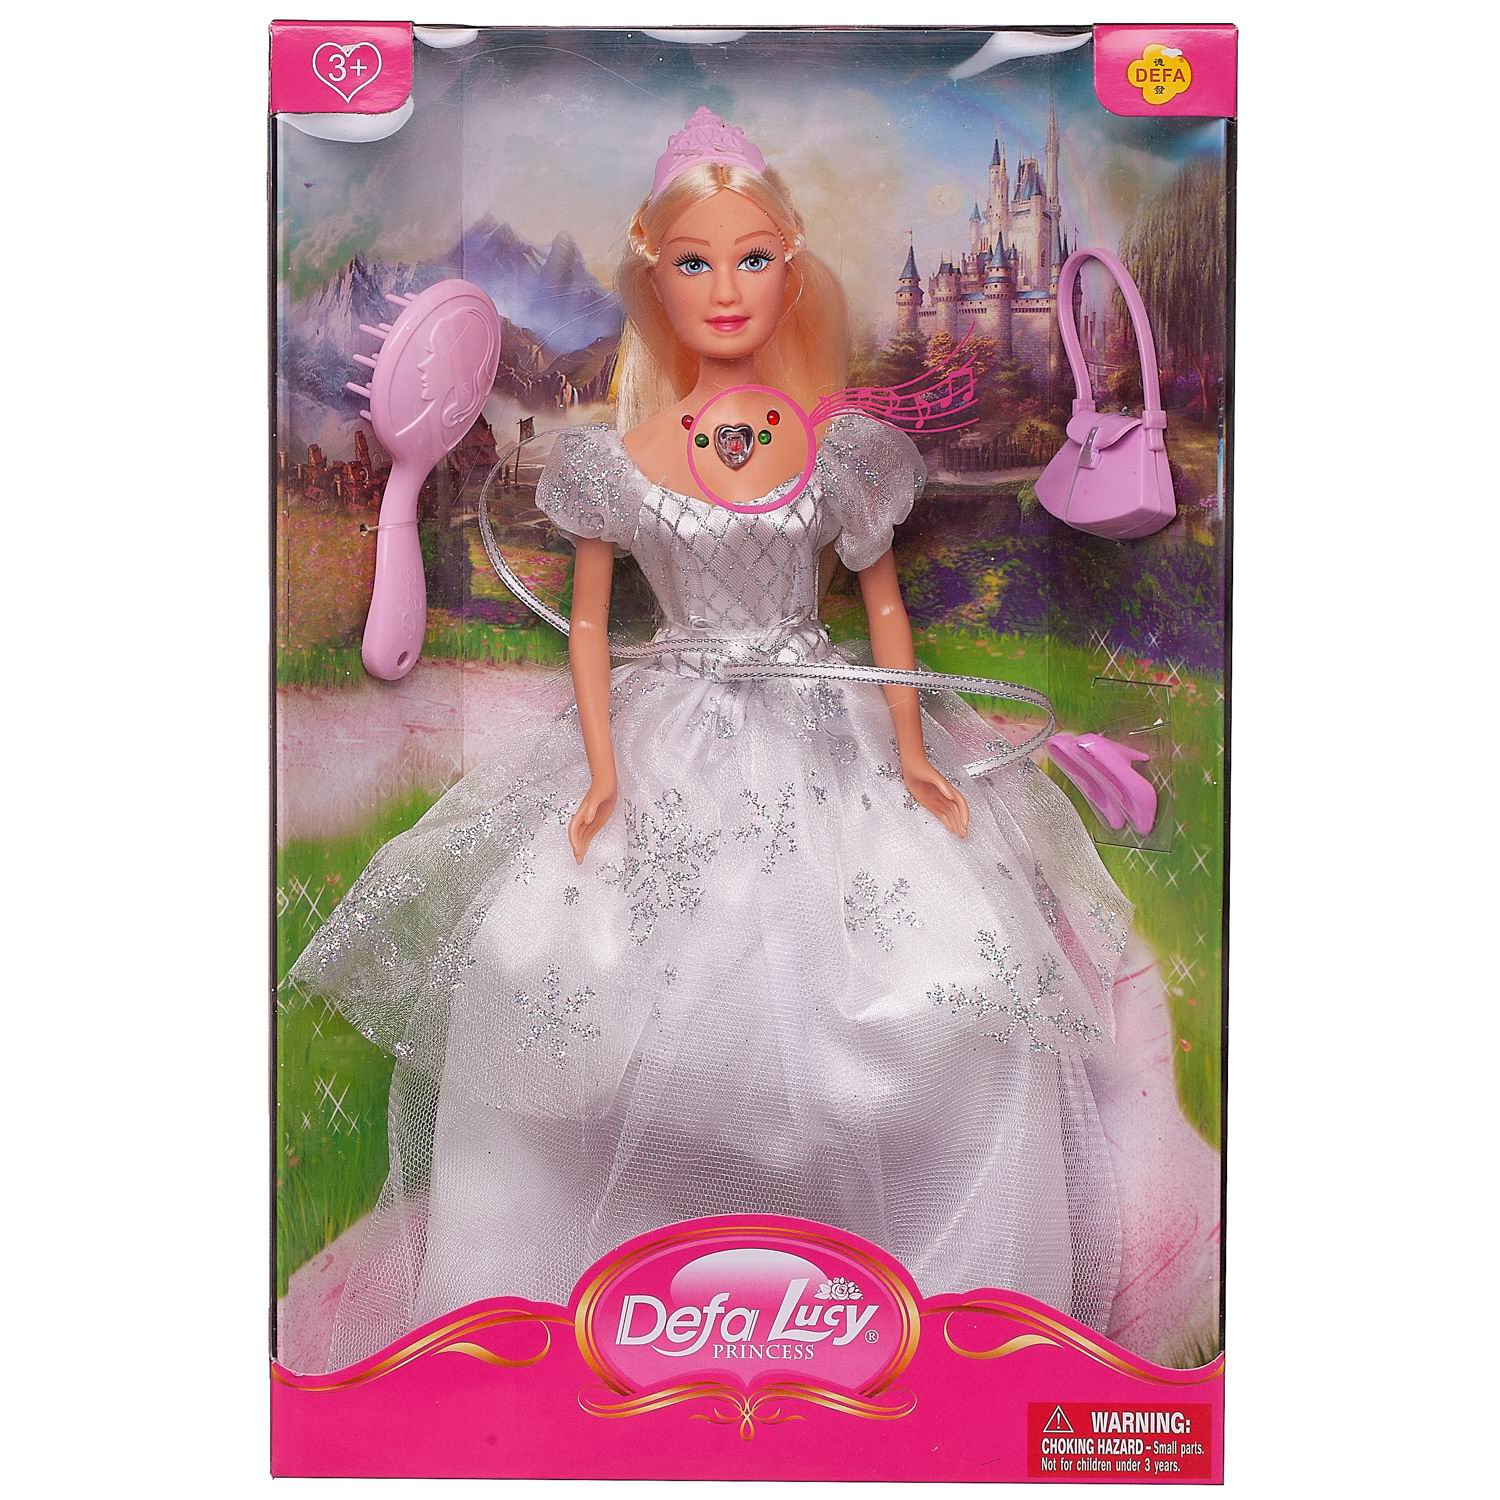 Кукла Defa Lucy Принцесса в белом платье в наборе с игровыми предметами, 29 см кукла в наборе с аксессуарами римские каникулы 29 см mia 200669824 2